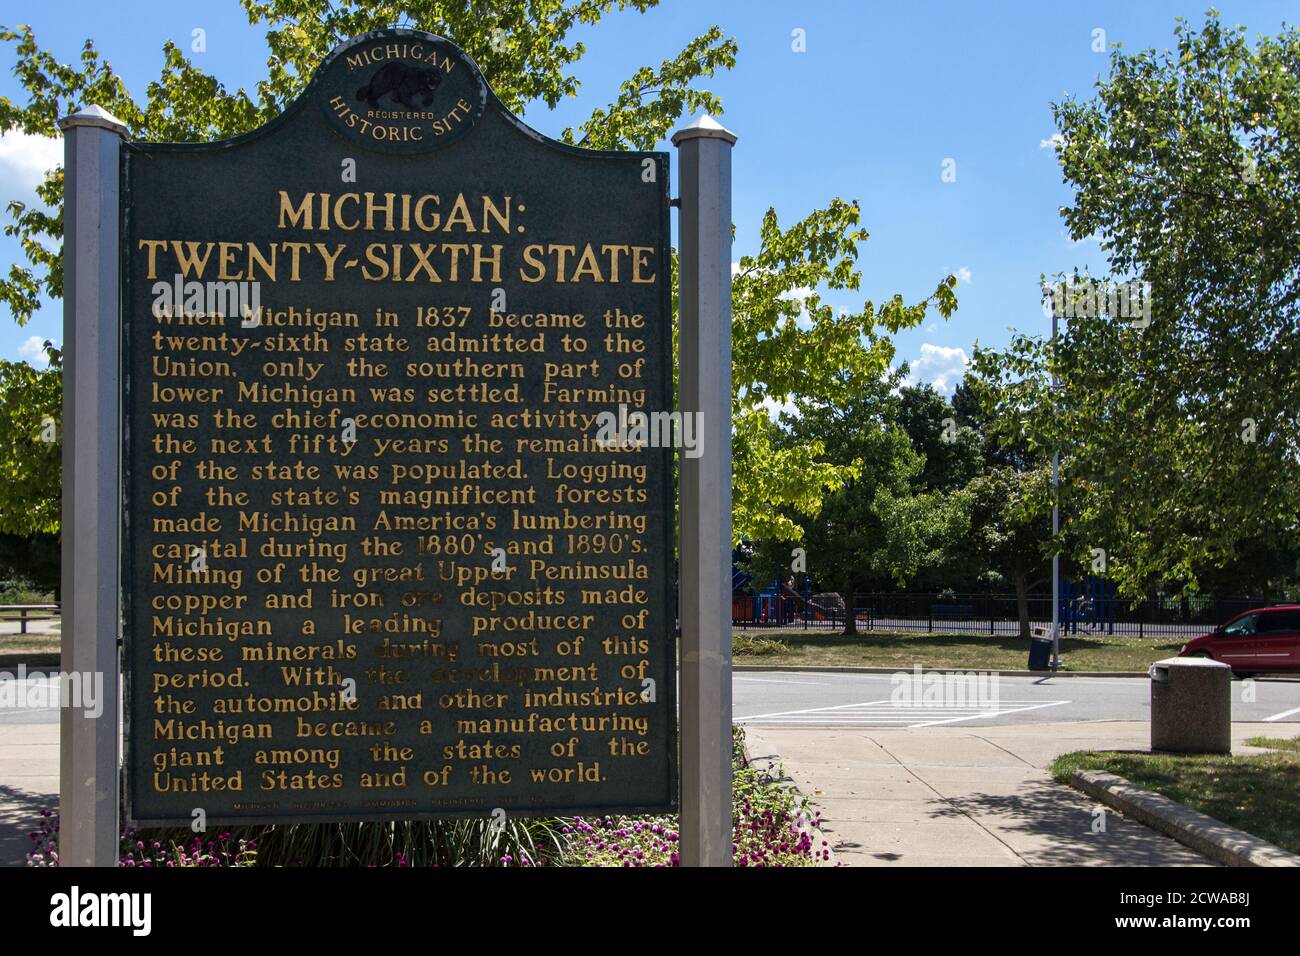 Marcador histórico que honra al estado de Michigan como el vigésimo sexto estado en los Estados Unidos de América. Foto de stock